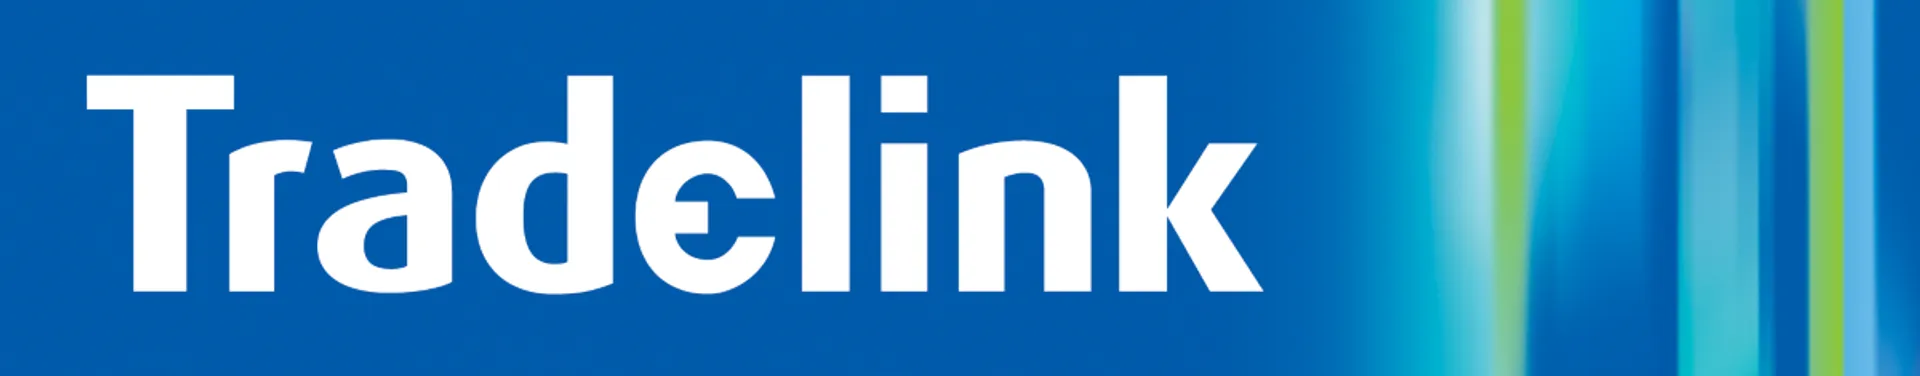 TRADELINK logo of current flyer